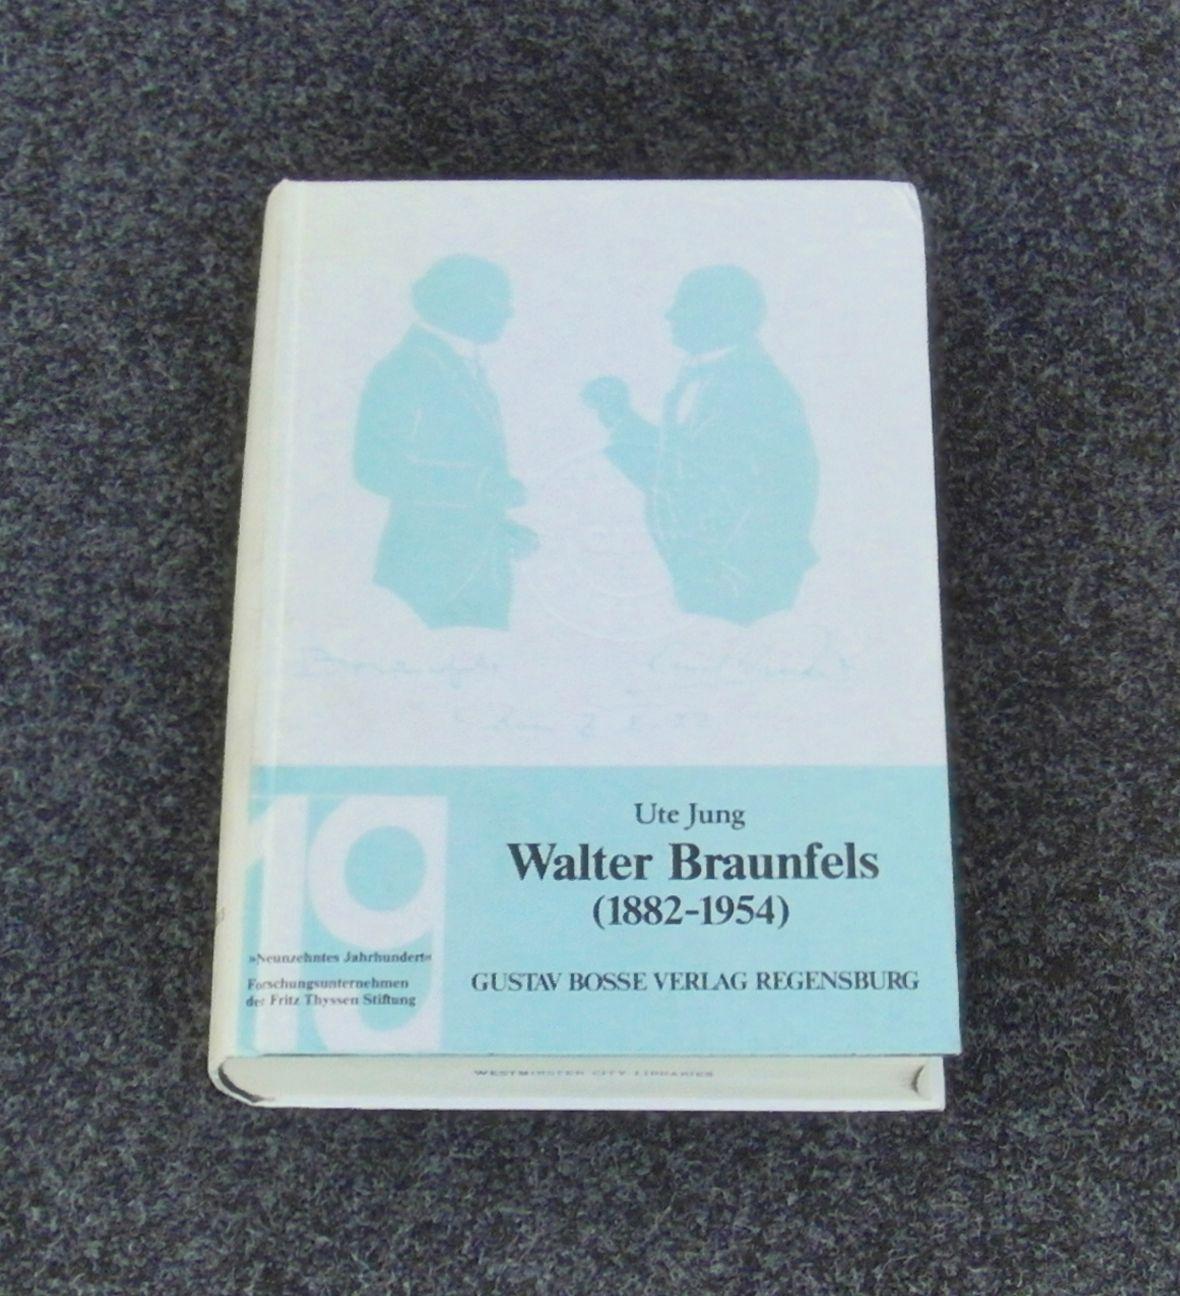 Walter Braunfels (1882-1954) (Studien zur Musikgeschichte des 19. Jahrhunderts ; Bd 58) - Ute Jung